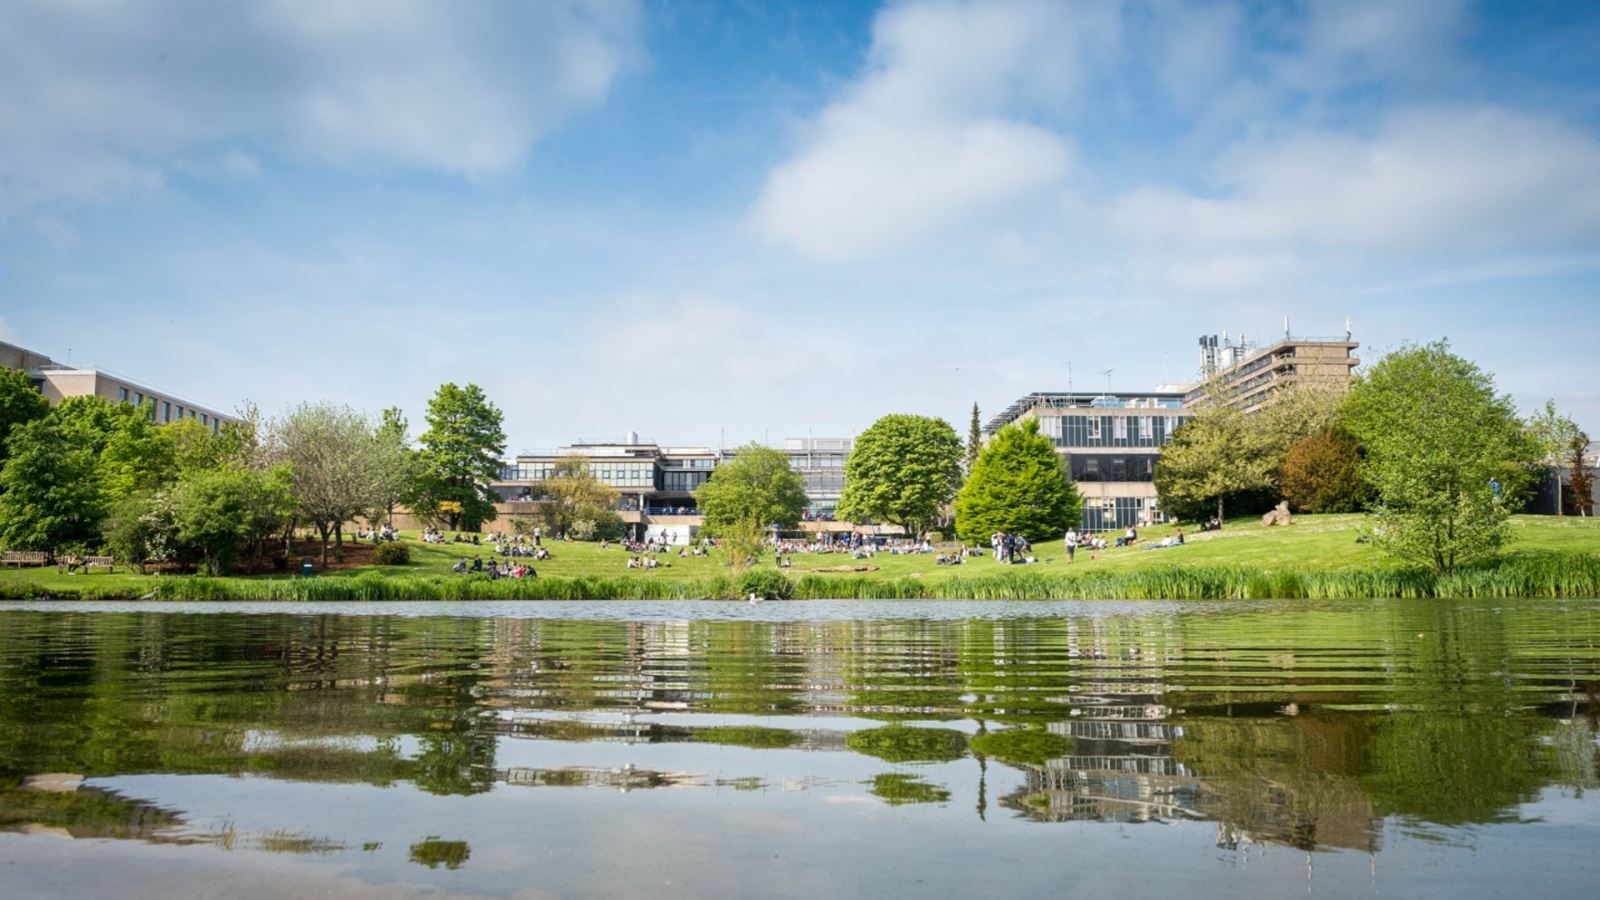 Lake at the University of Bath